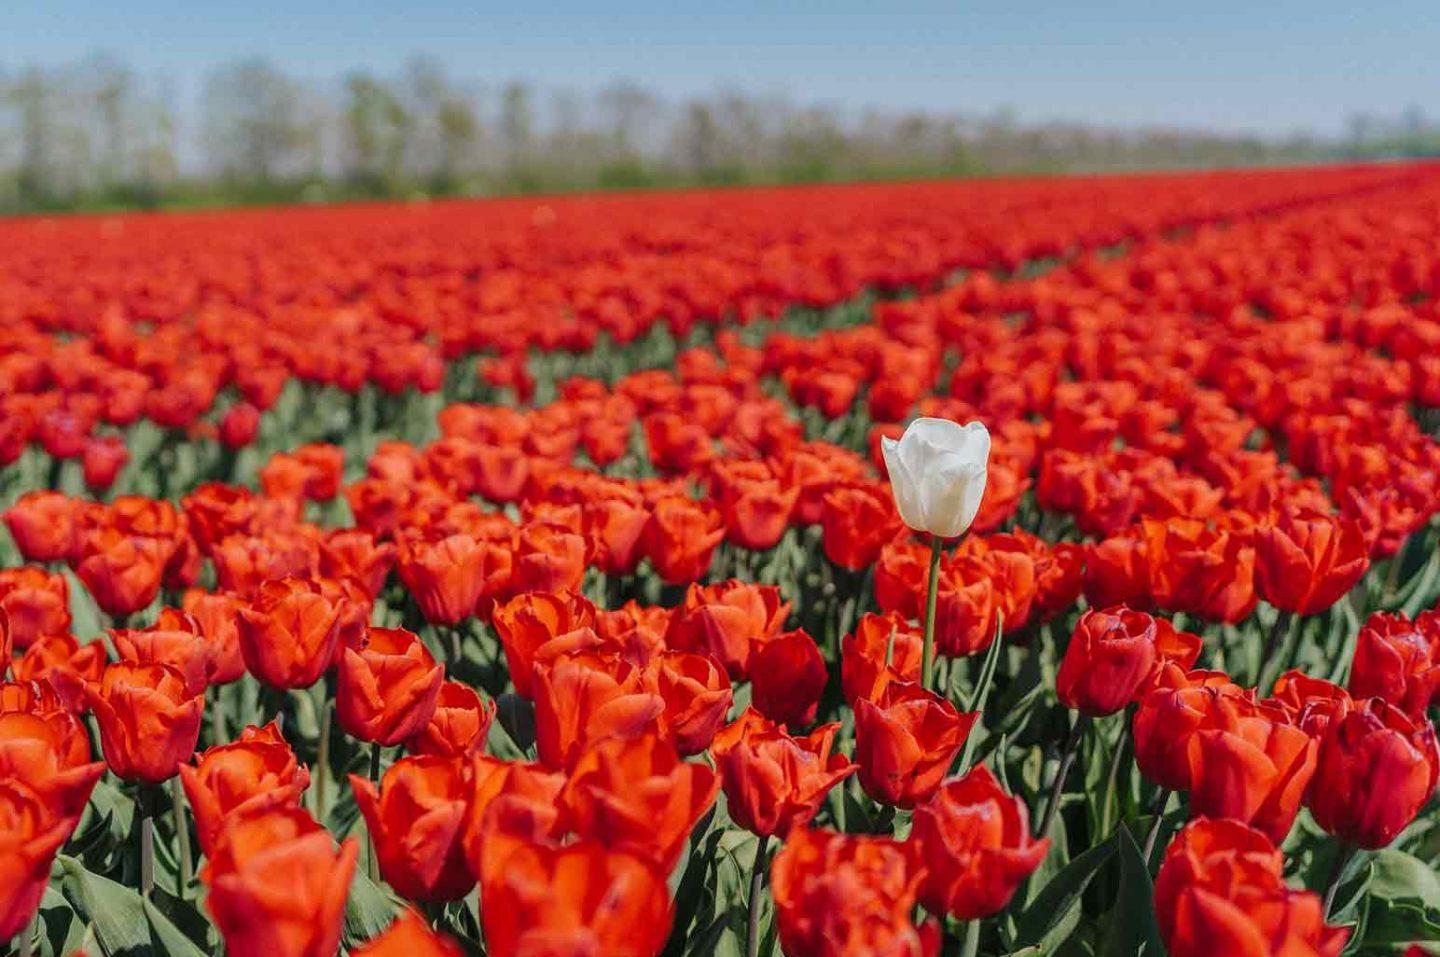 Best Tulip Festivals in the US